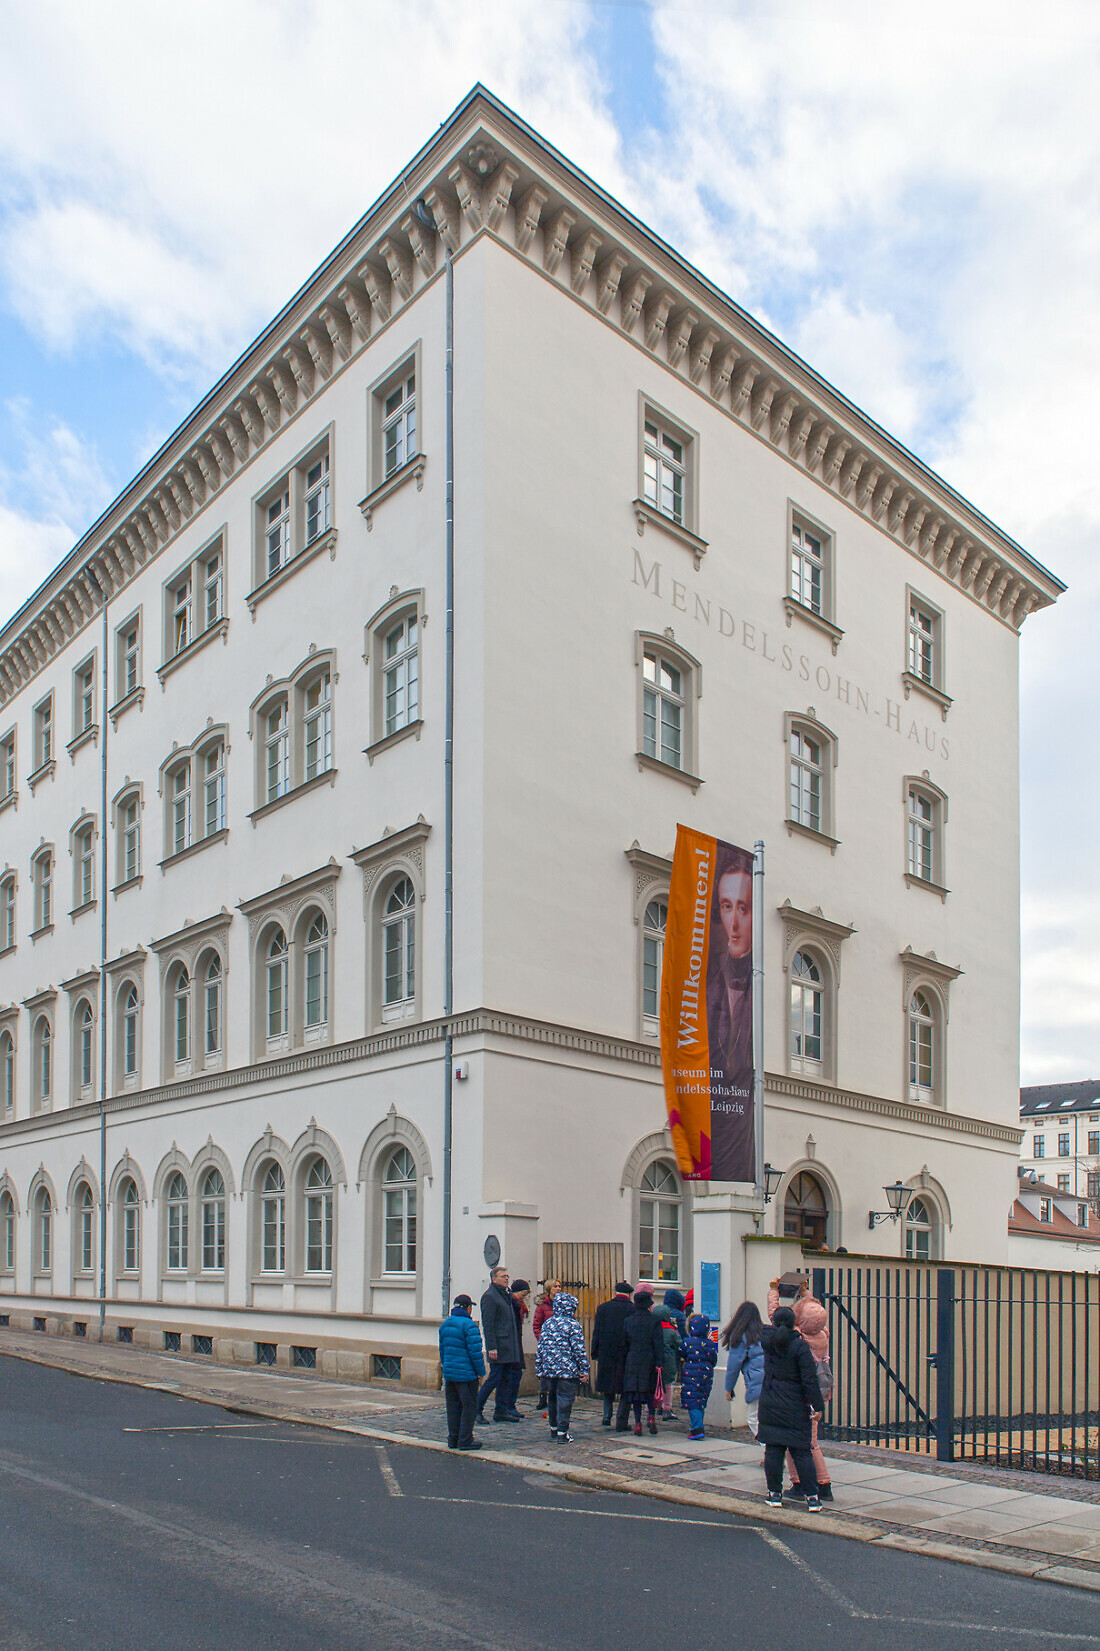 Außenansicht des Mendelssohn-Hauses in Leipzig mit einer Besuchergruppe